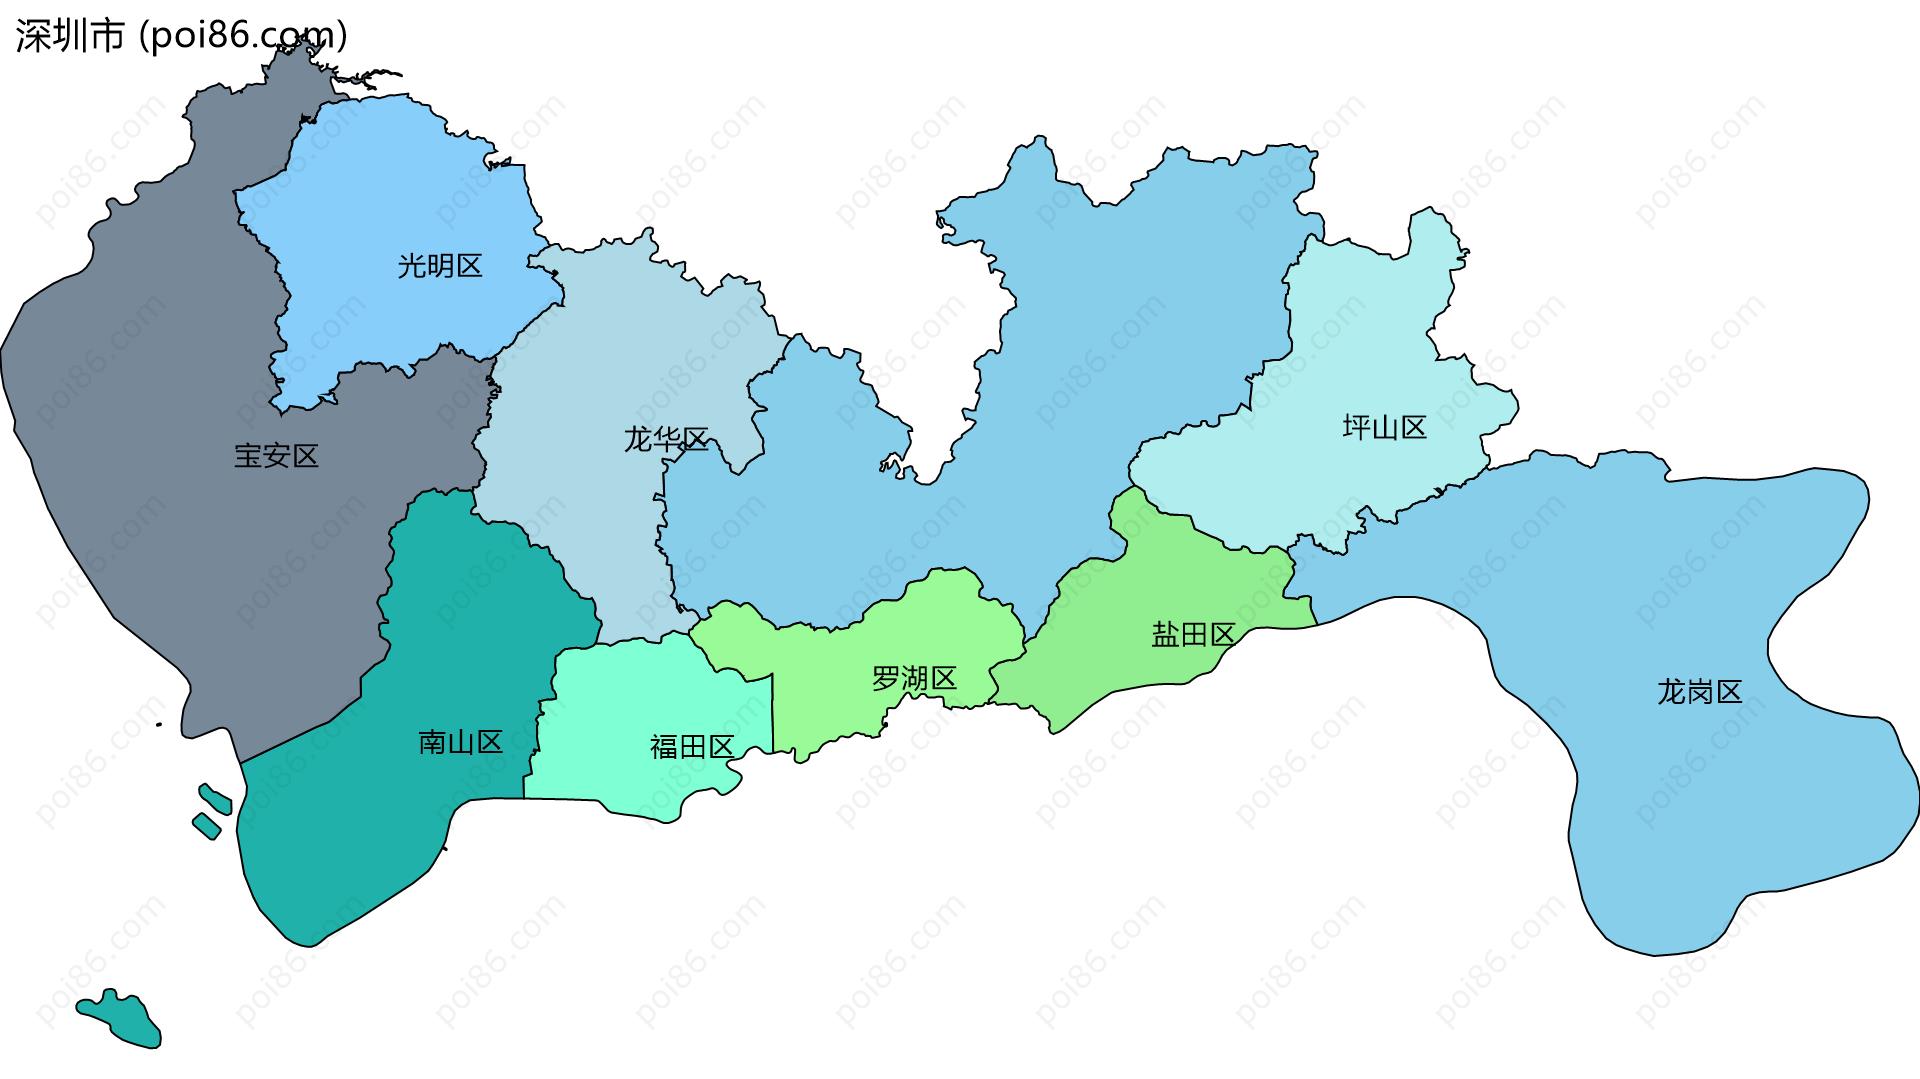 深圳市边界地图